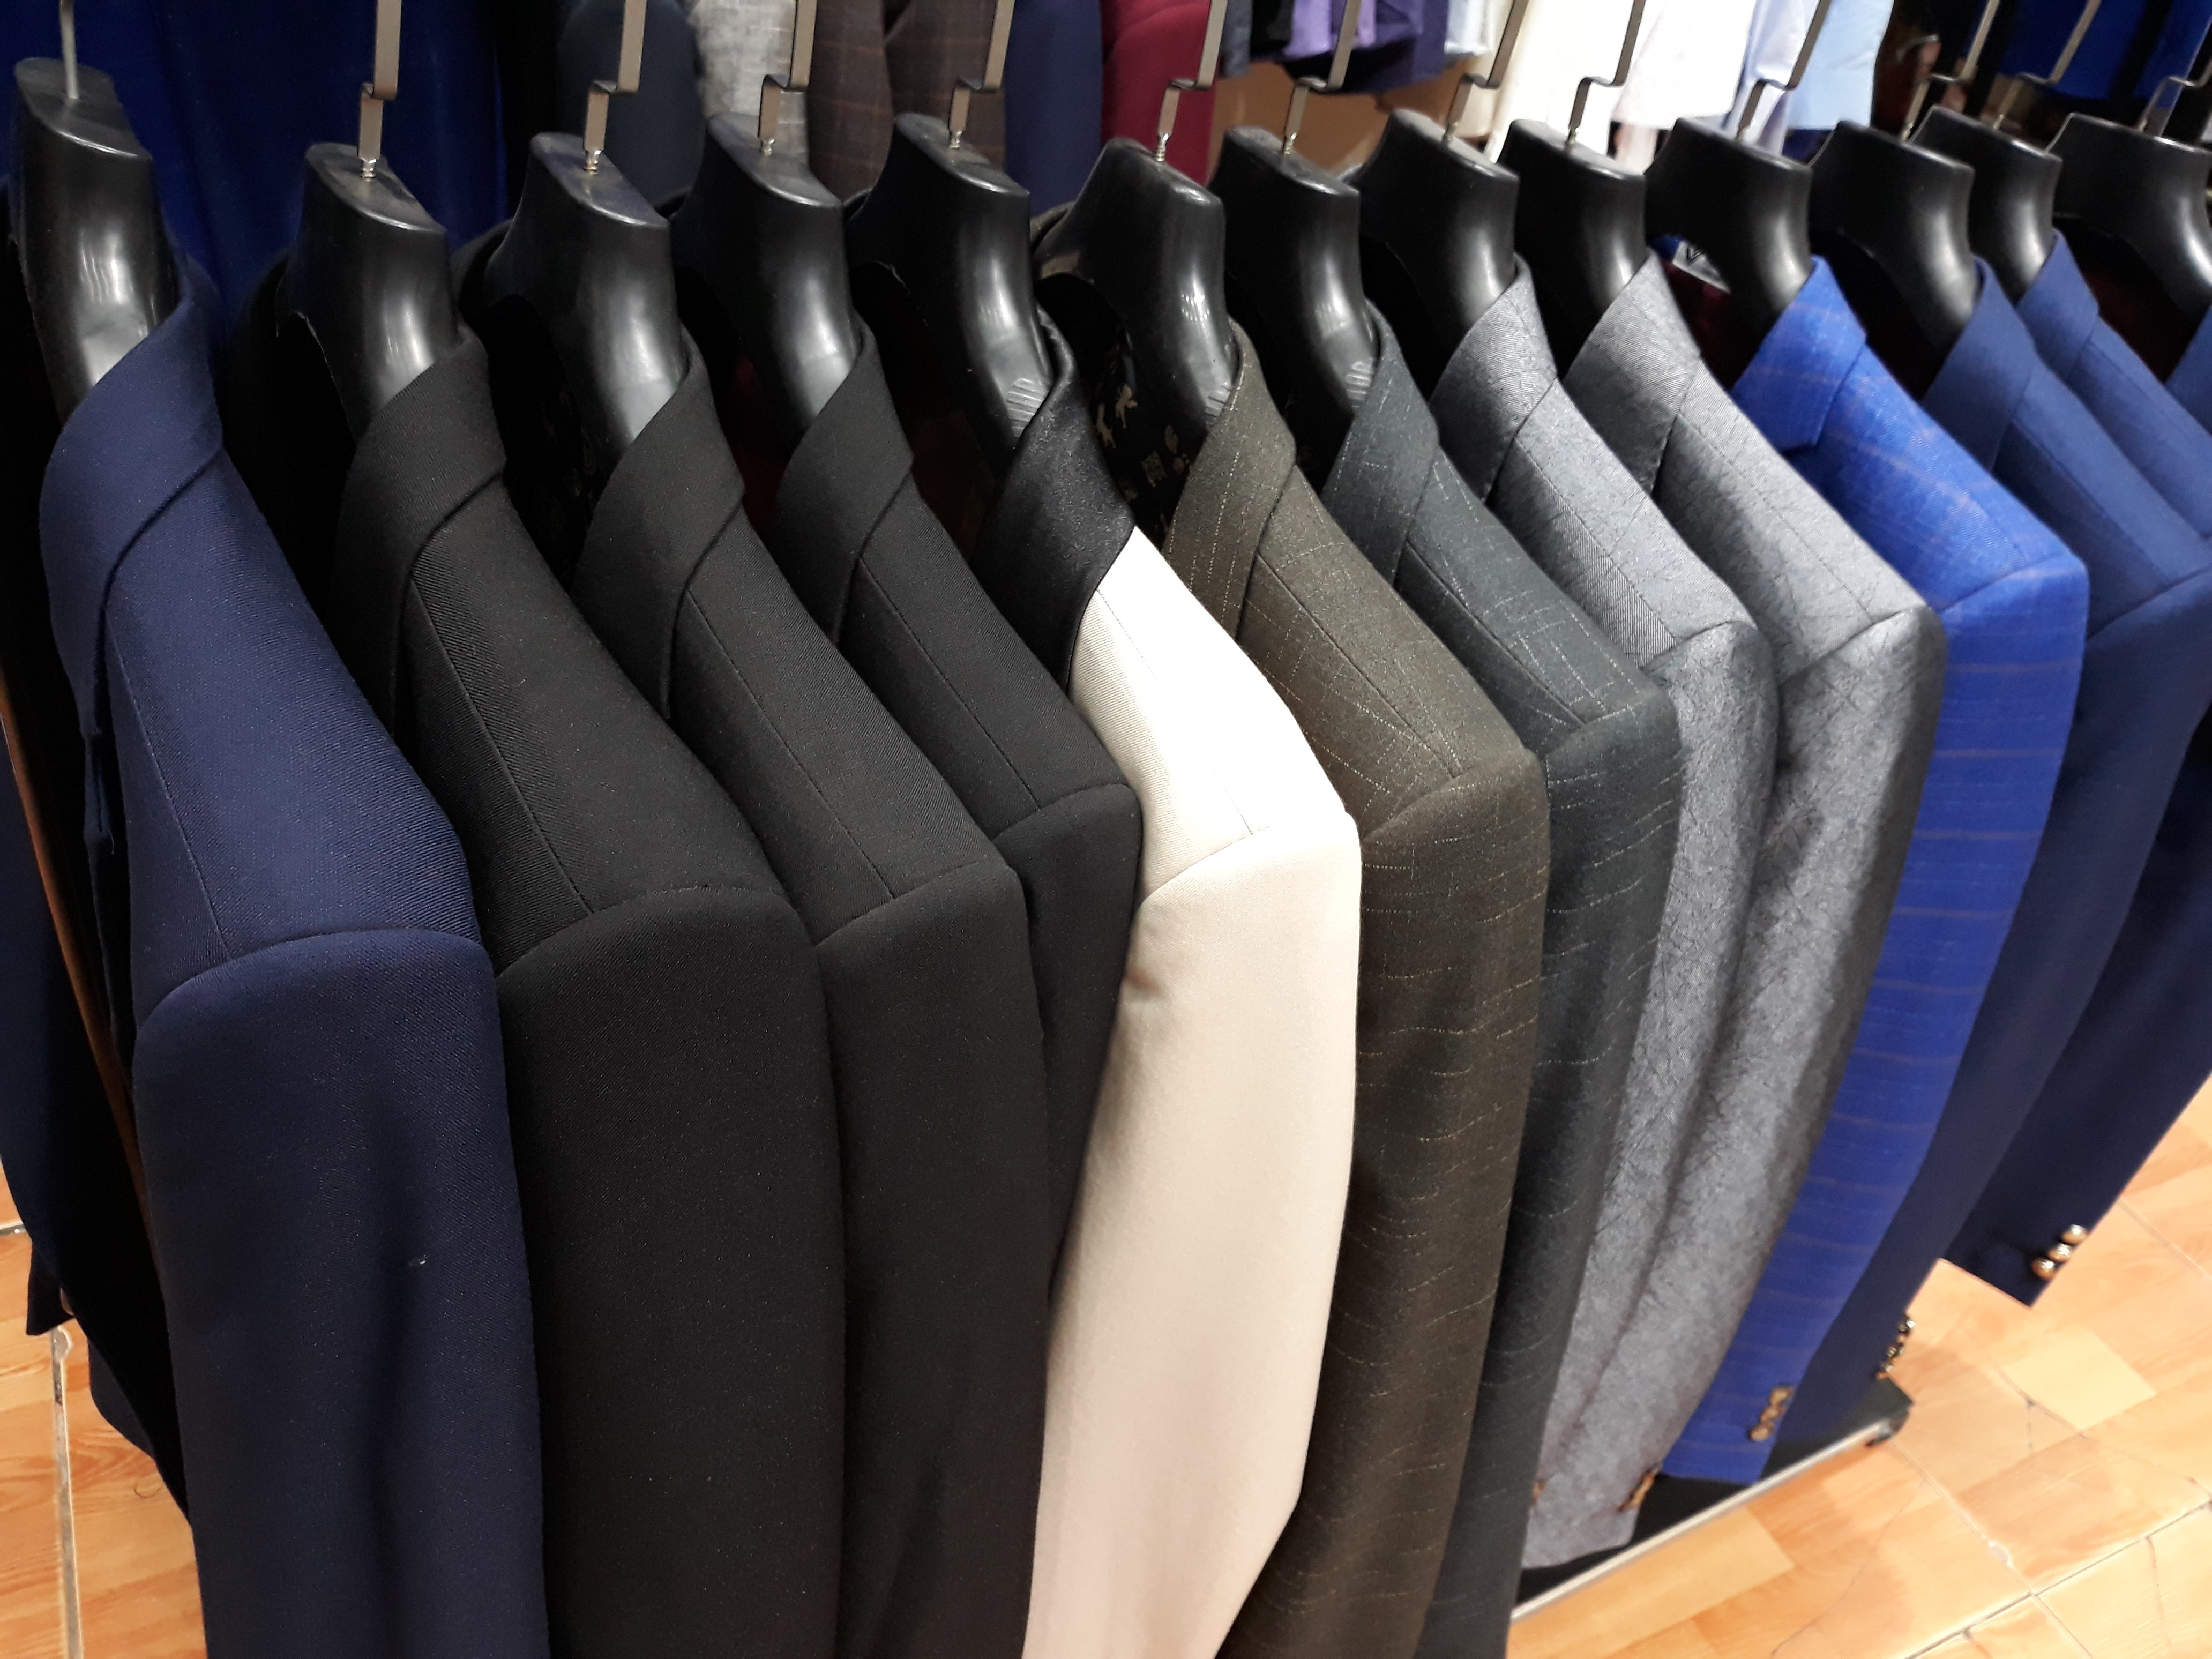  Áo vest nam giá rẻ, mẫu mã đa dạng, chất liệu tốt